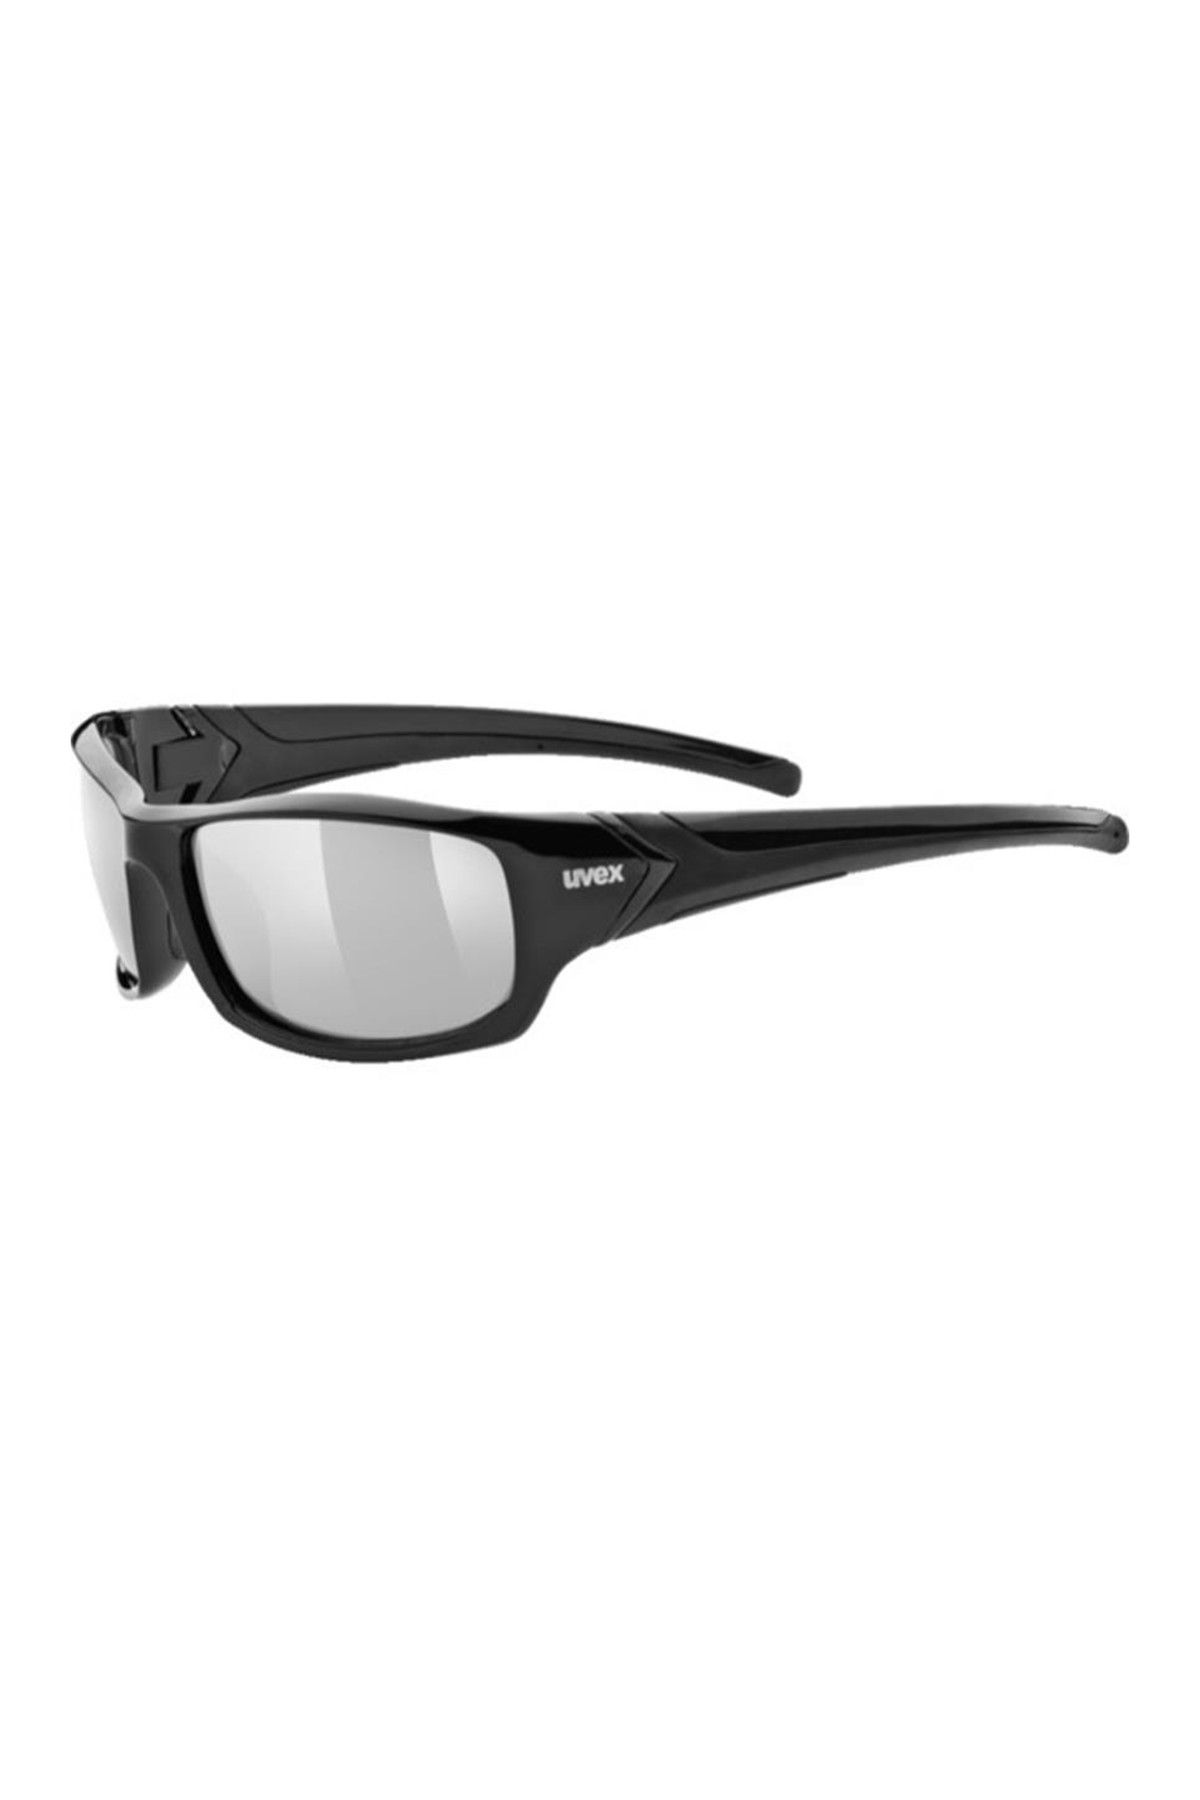 Купить очки волгоград. Солнцезащитные очки Uvex Sportstyle 211. Солнцезащитные очки Uvex Sportstyle 211 купить.